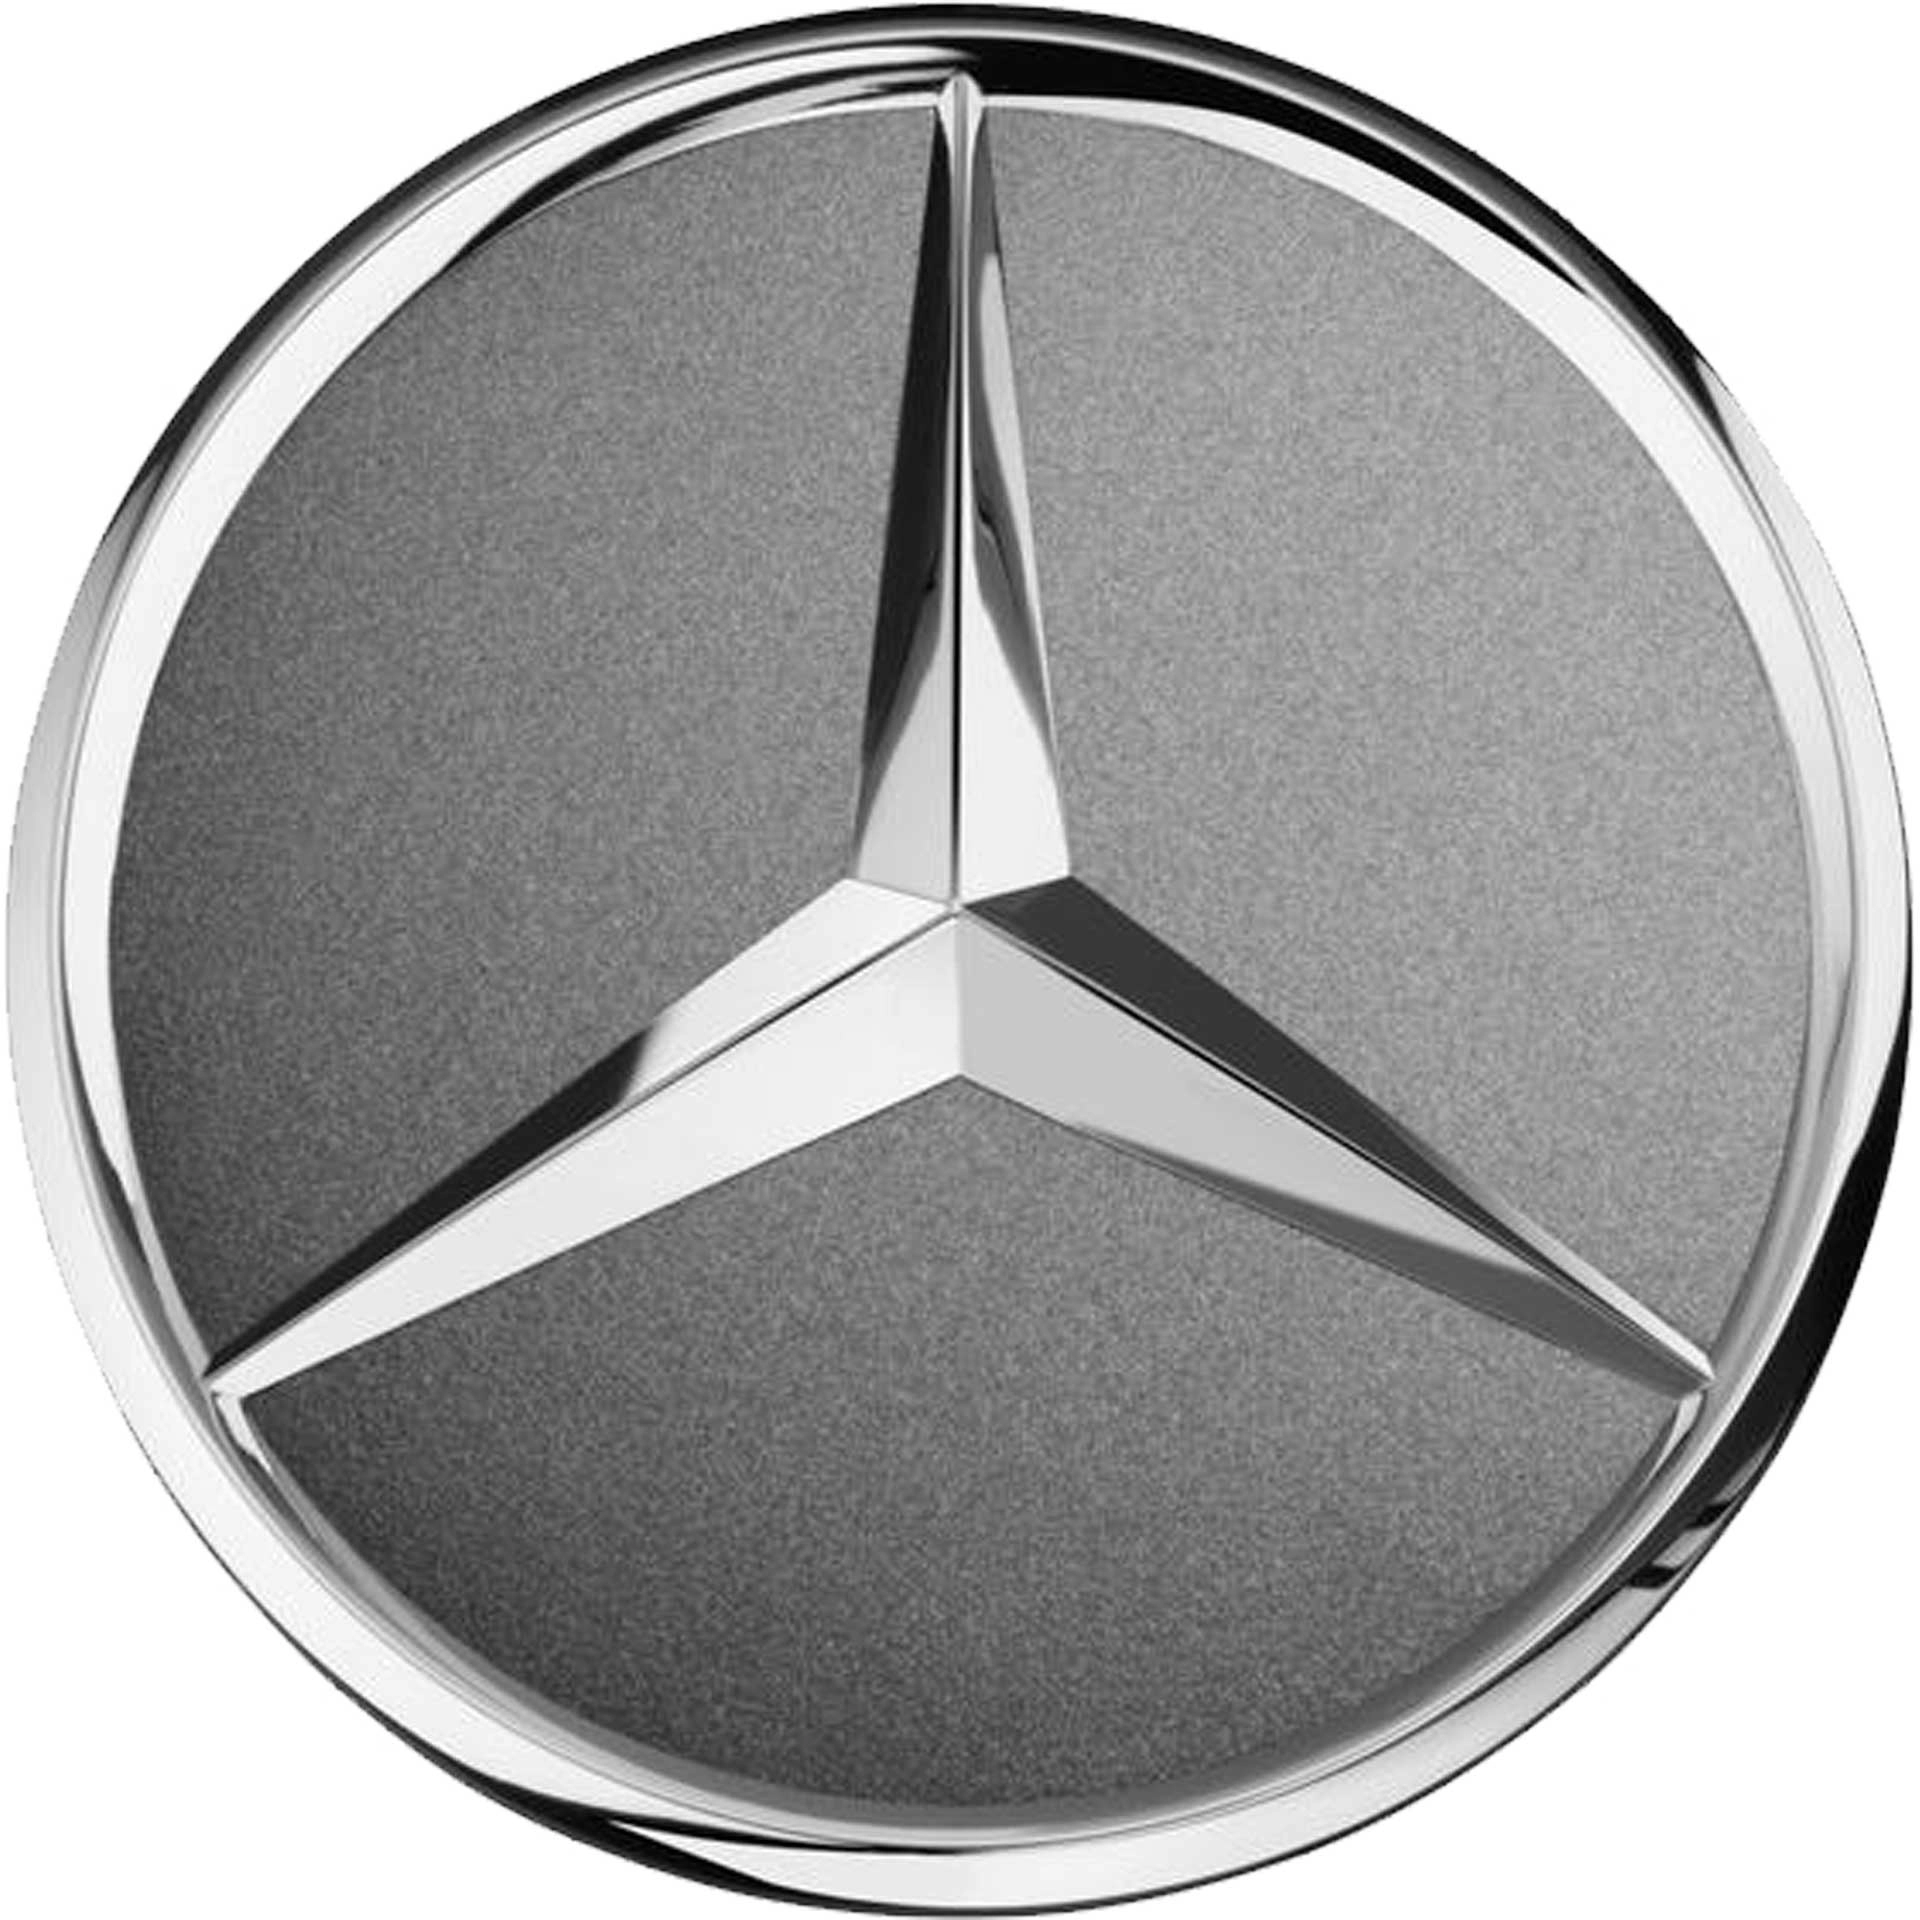 Mercedes-Benz Radnabenabdeckung Stern tremolit-metallic A00040027009130